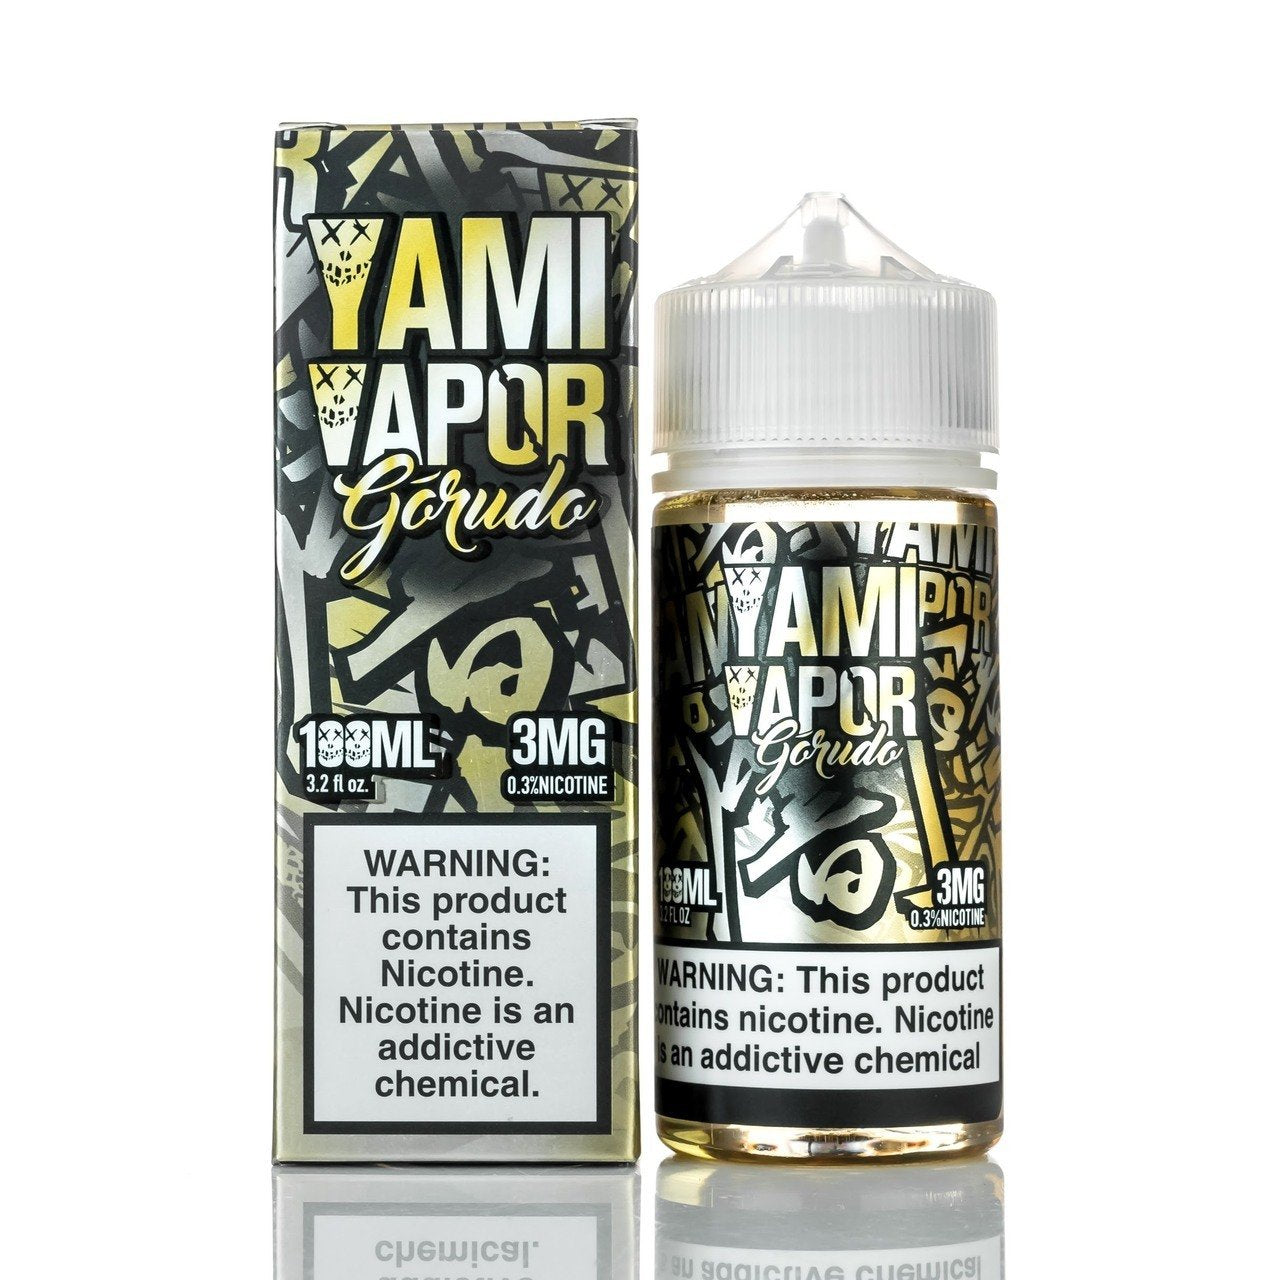 Yami Vapor Gorudo 0mg 100ml Shortfill E-Liquid